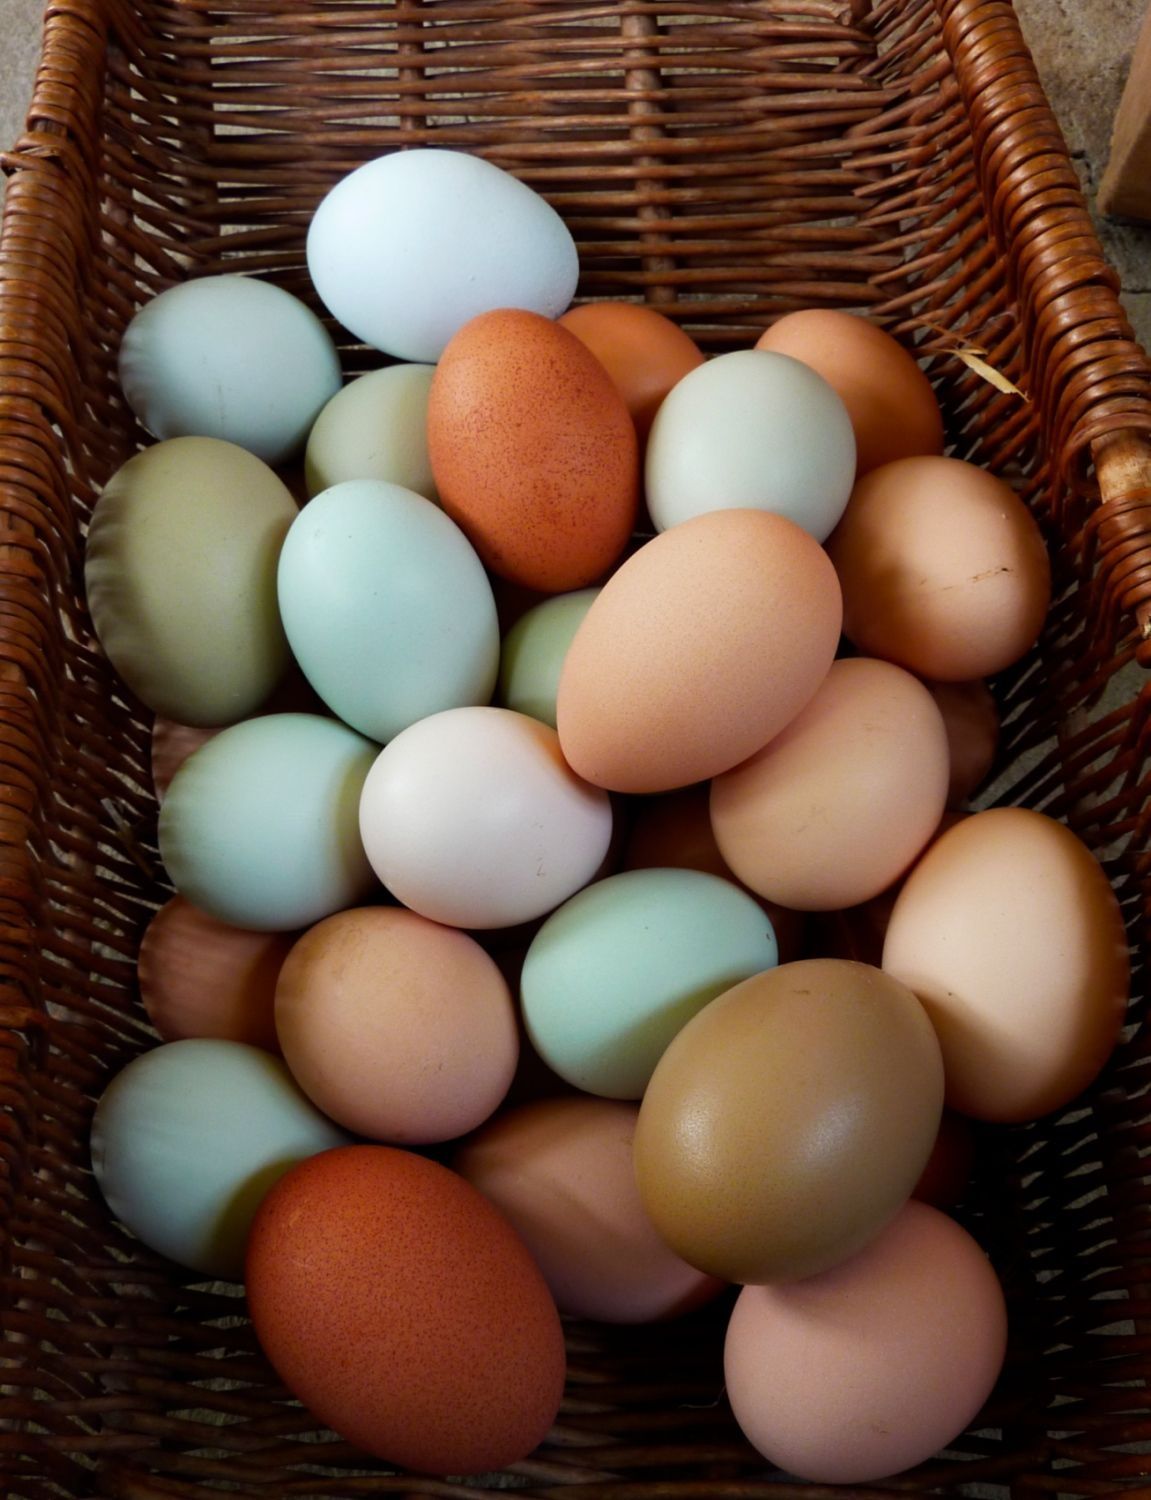 Инкубационное яйцо Доминант микс крупная партия на март